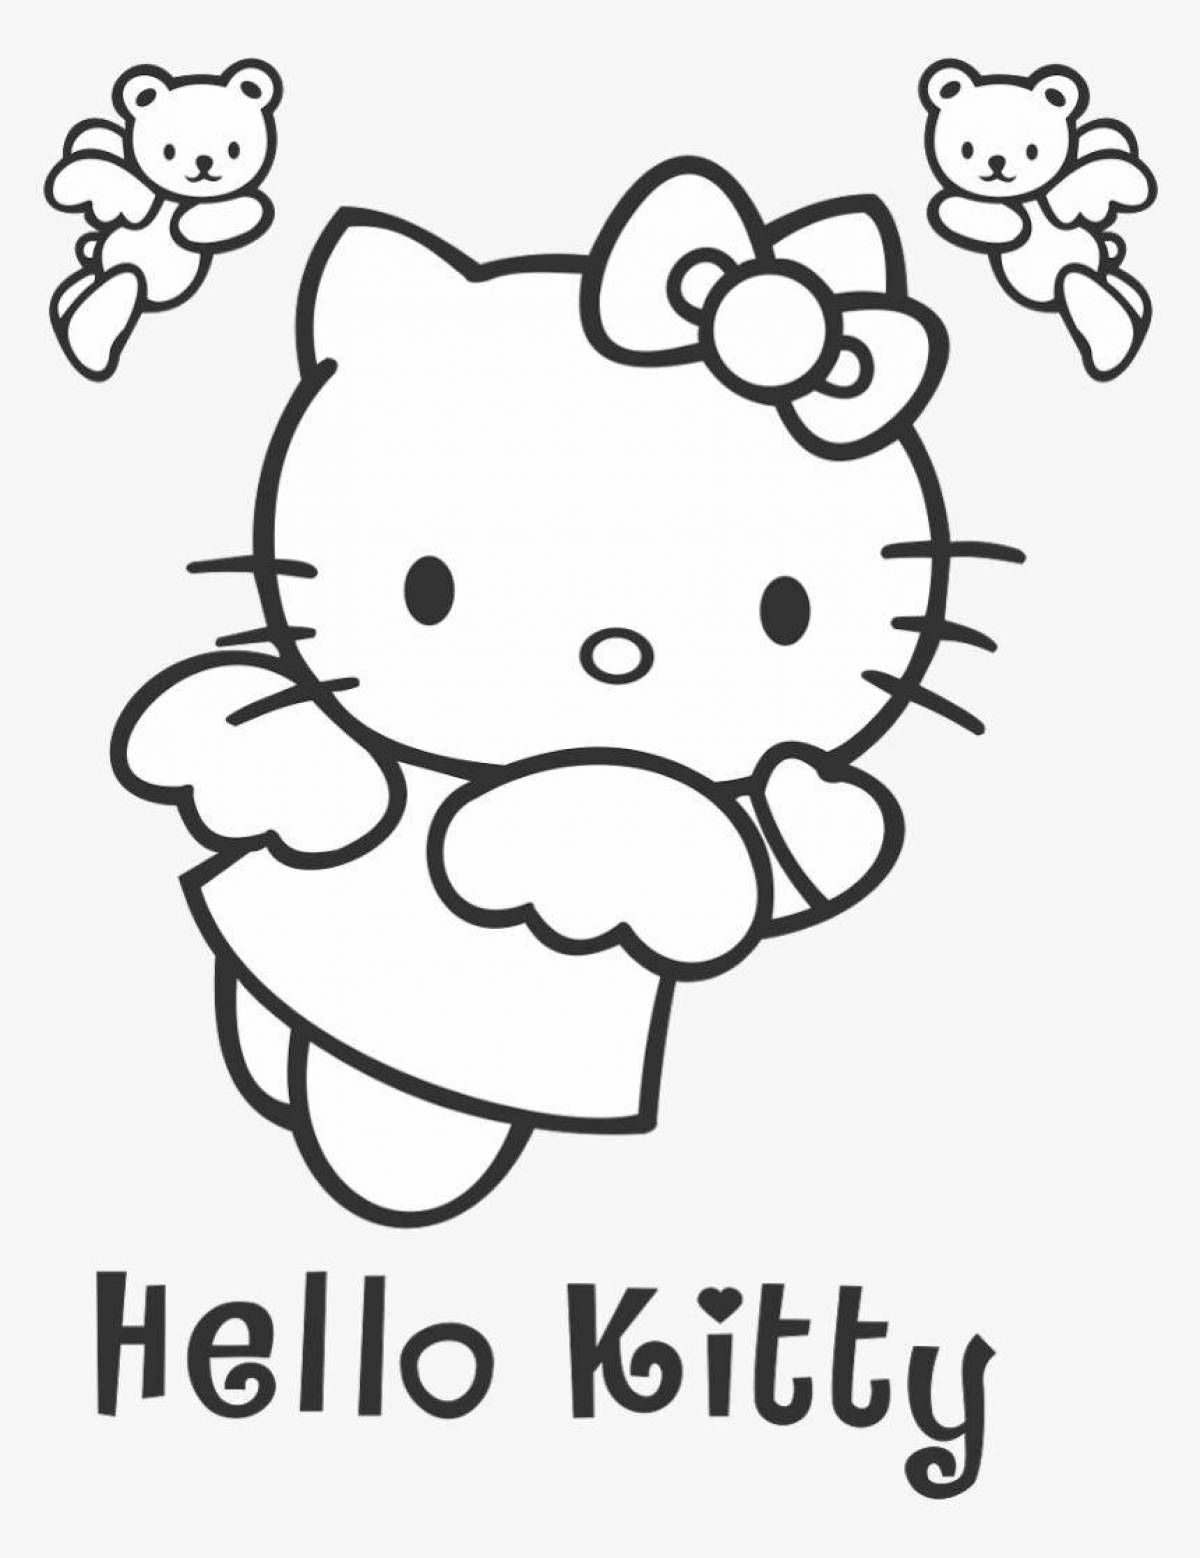 Dazzling hello kitty mini coloring book